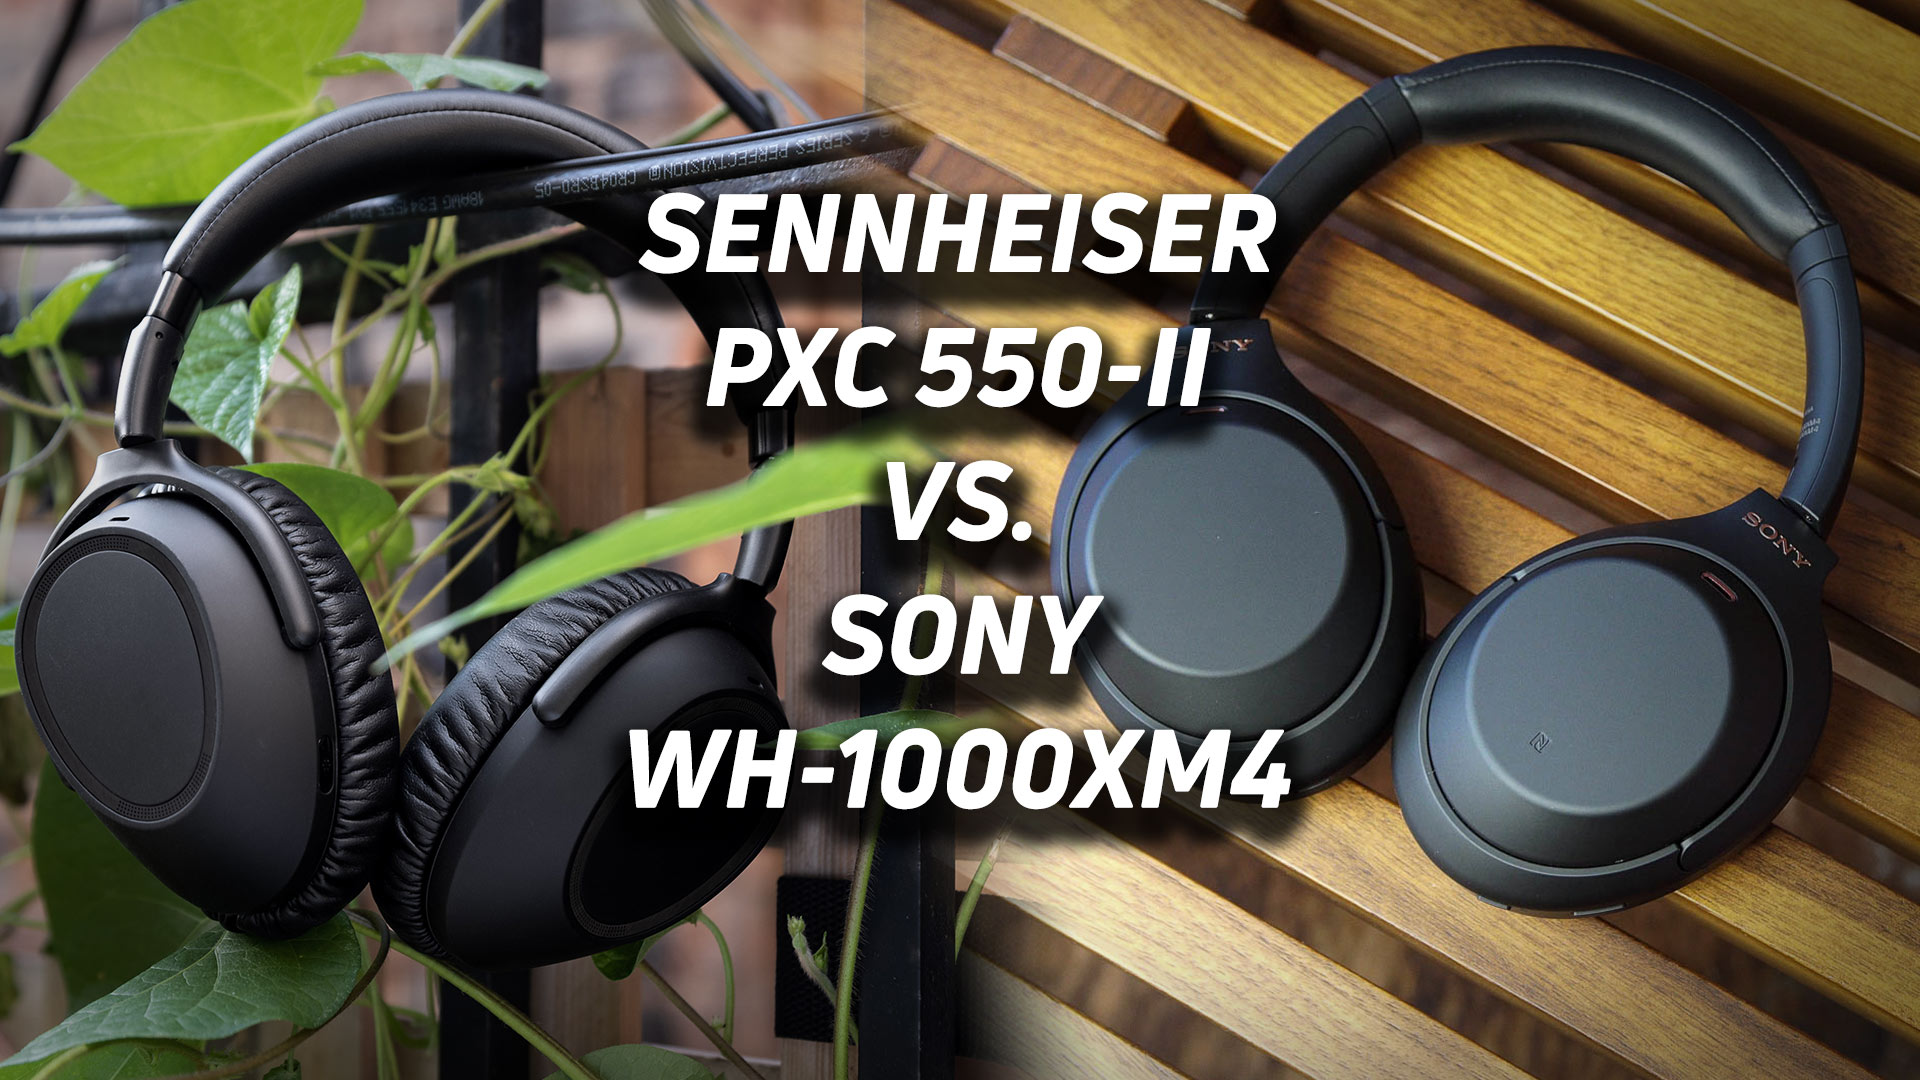 Sony WH-1000XM4 vs Sennheiser PXC 550-II - SoundGuys